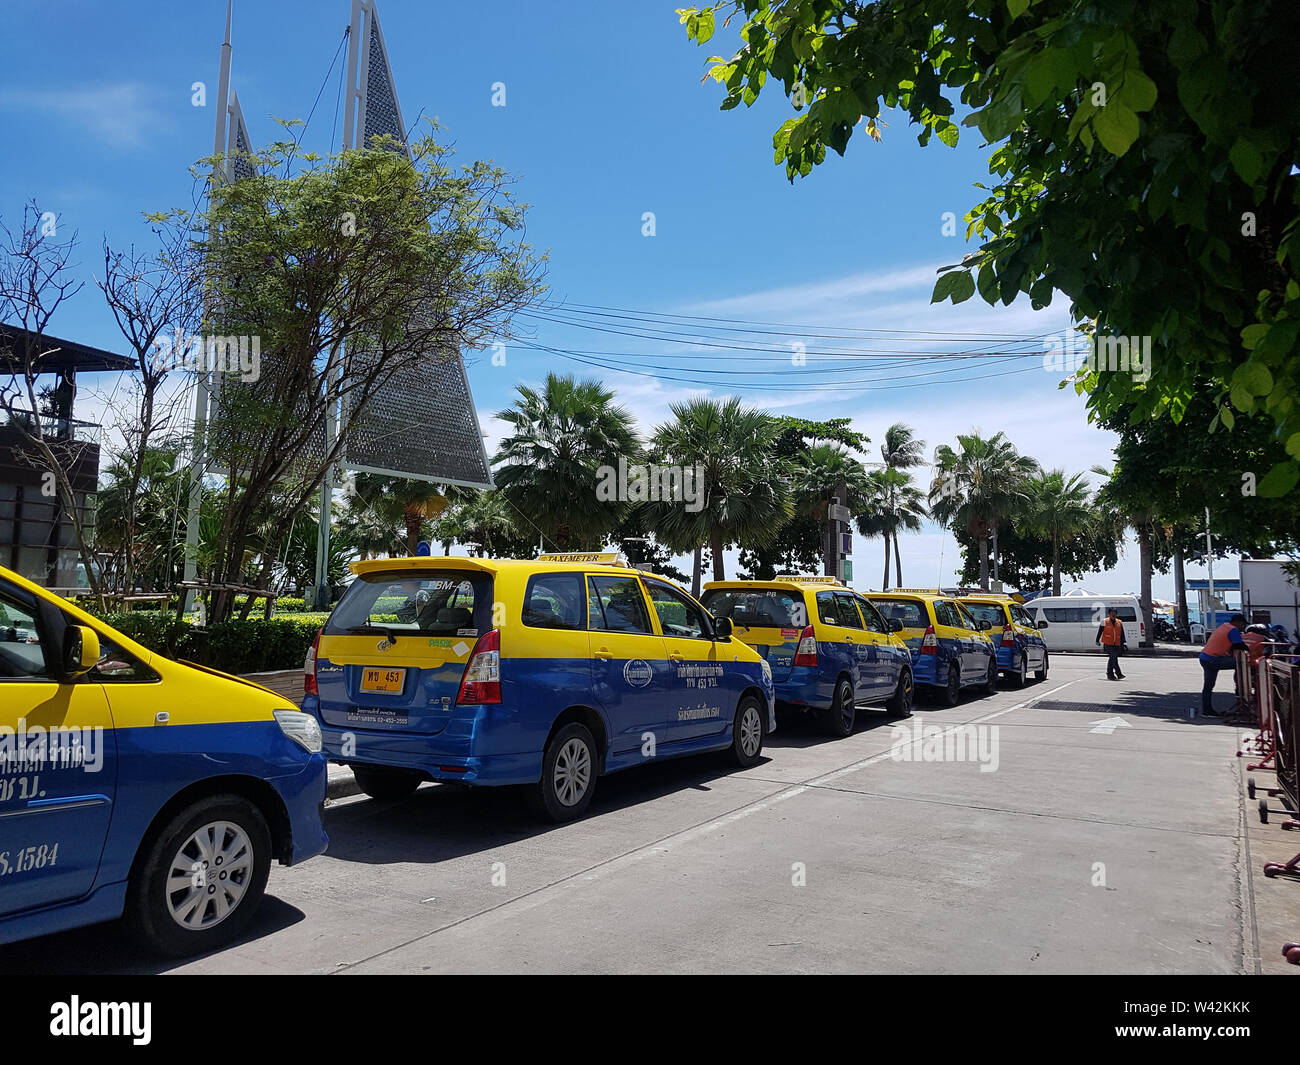 PATTATA, THAÏLANDE - 29 juin : bleu jaune taxi-mètres parking cabine dans les terrains de stationnement du centre commercial Central Festival Pattaya Beach store sur le mois de juin Banque D'Images